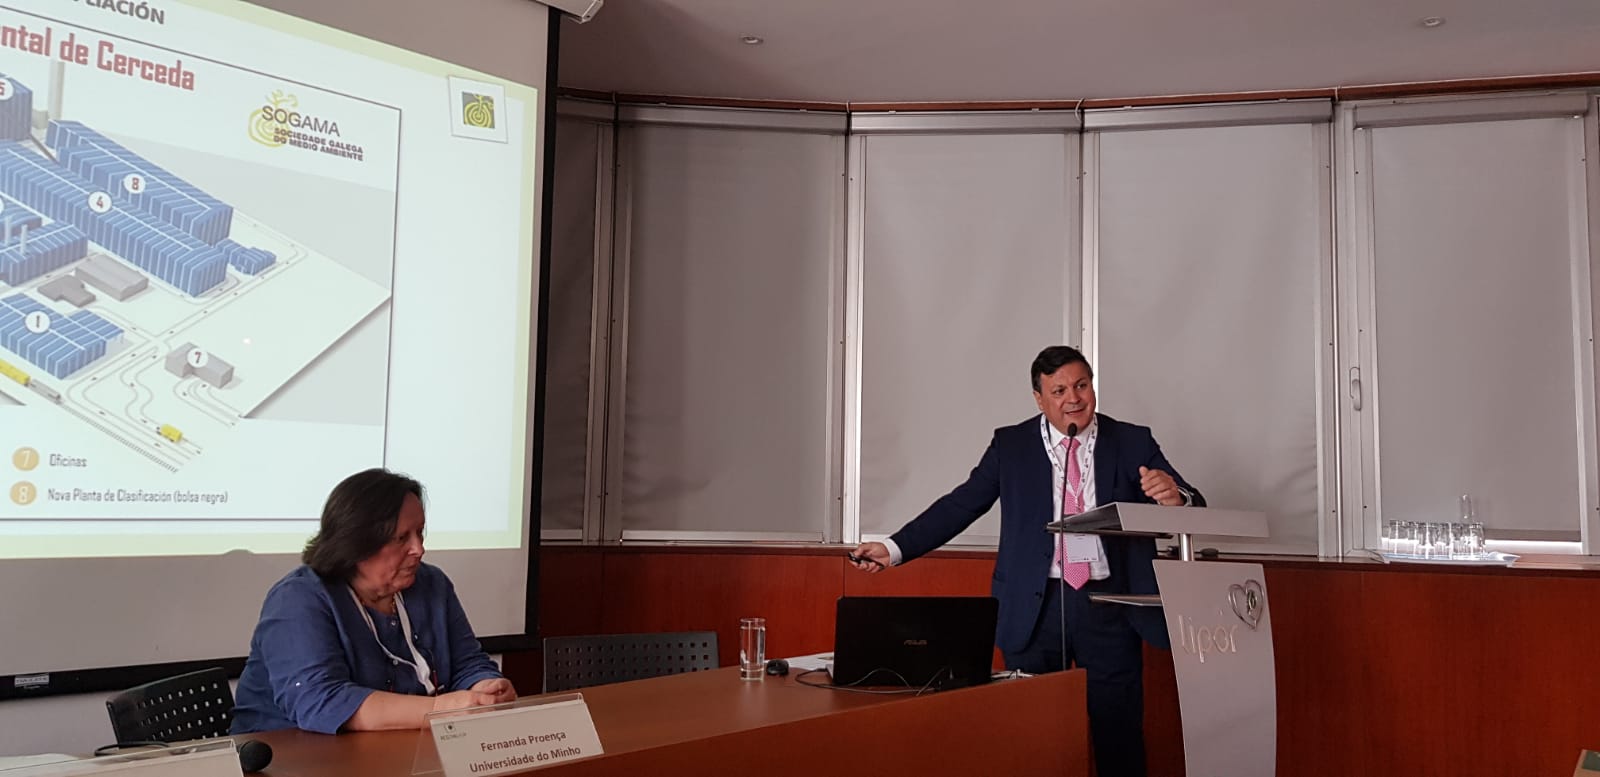 Isidro García Téllez: el compostaje se asienta en el modelo Sogama